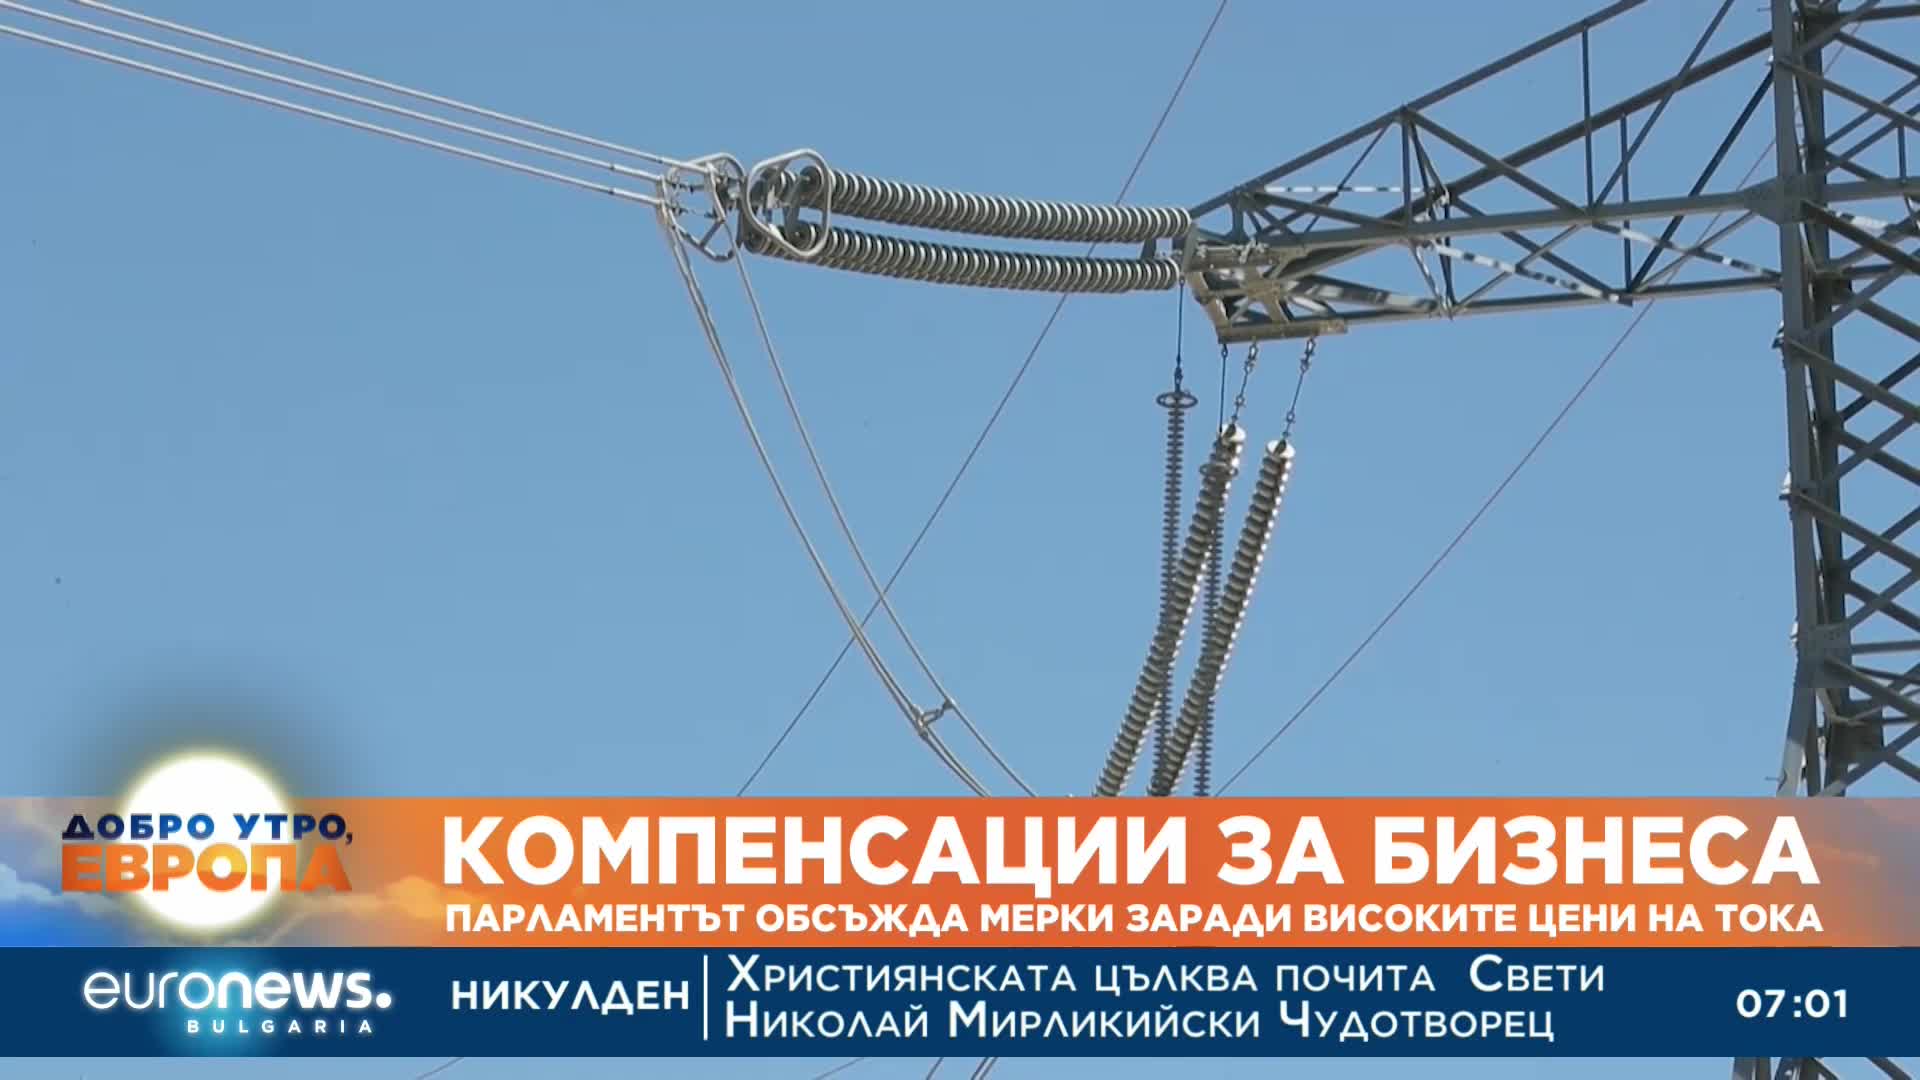 Парламентът обсъжда мерки заради високите цени на тока